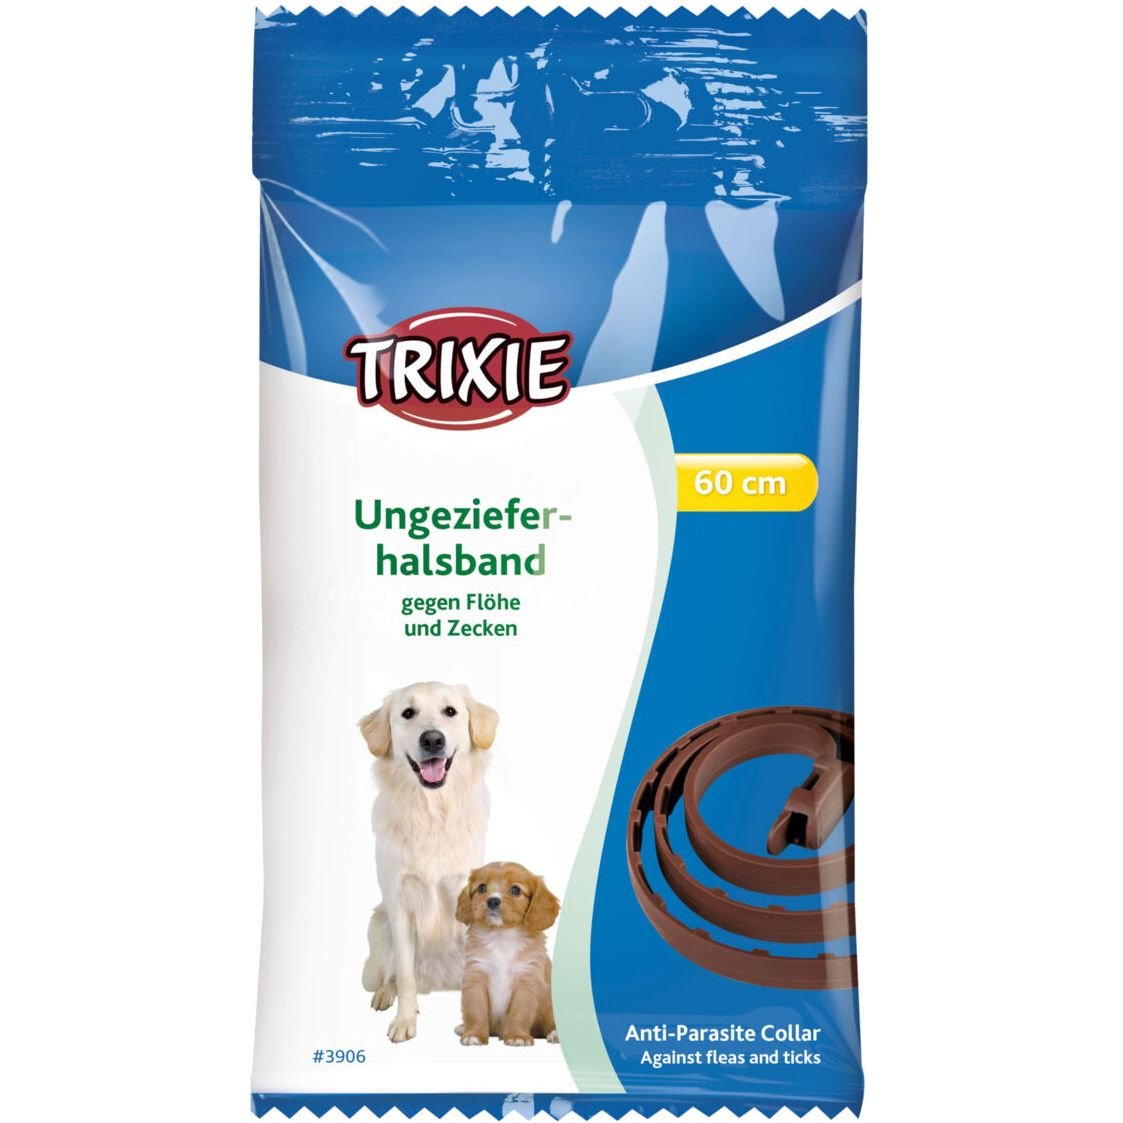 Біо-нашийник Trixie Flea & Tick Collar від бліх та кліщів для собак, 60 см - фото 2